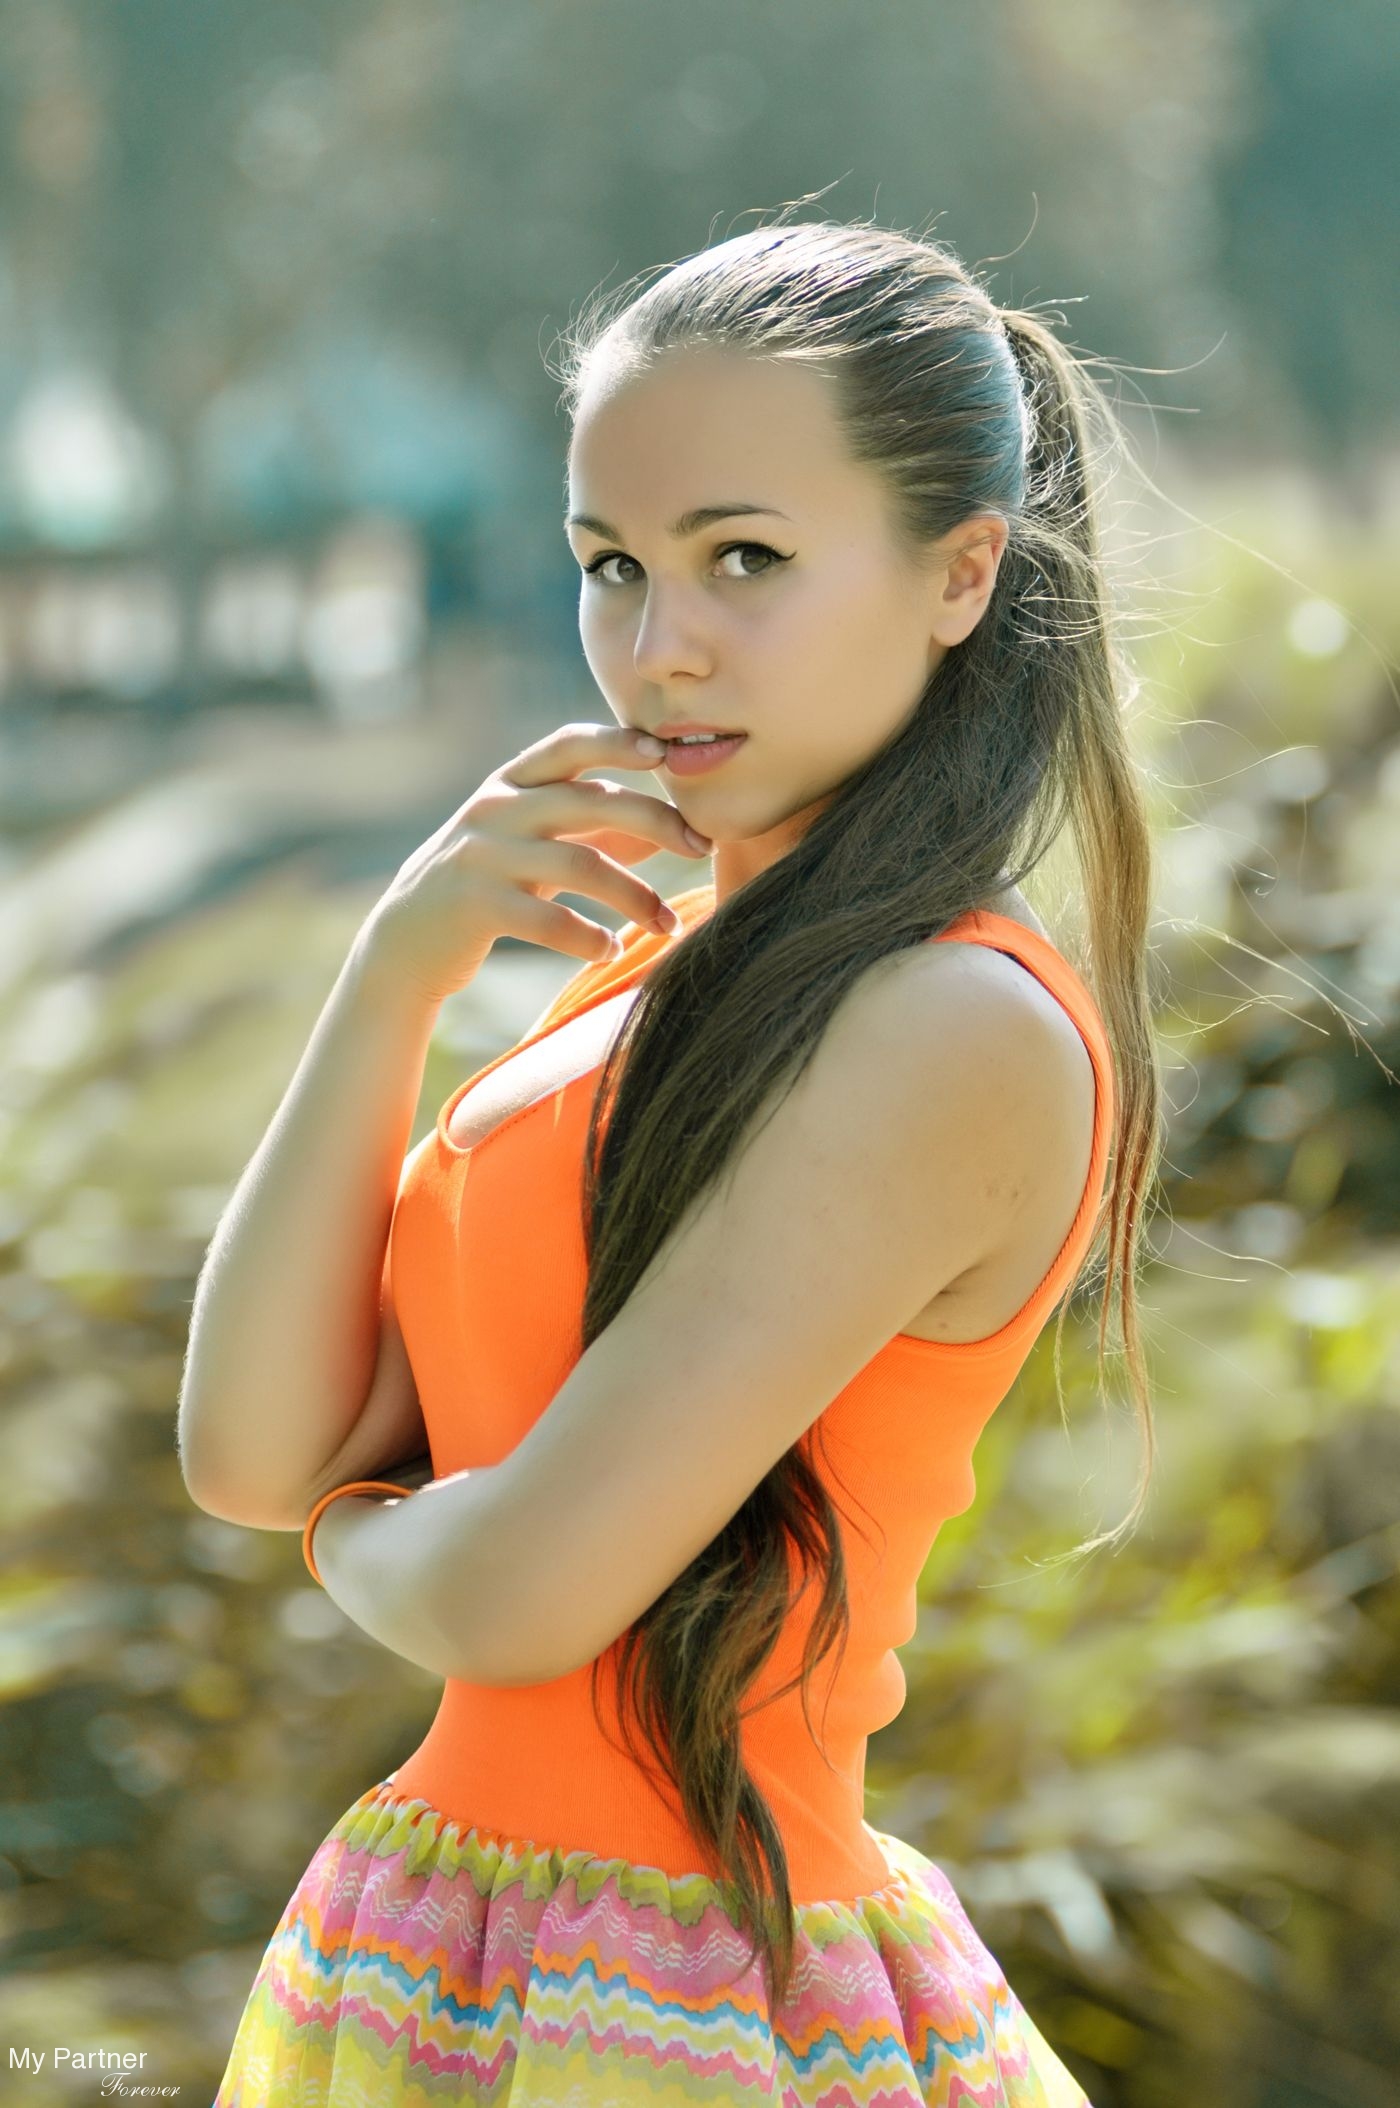 Dating Site to Meet Charming Ukrainian Woman Oksana from Kiev, Ukraine